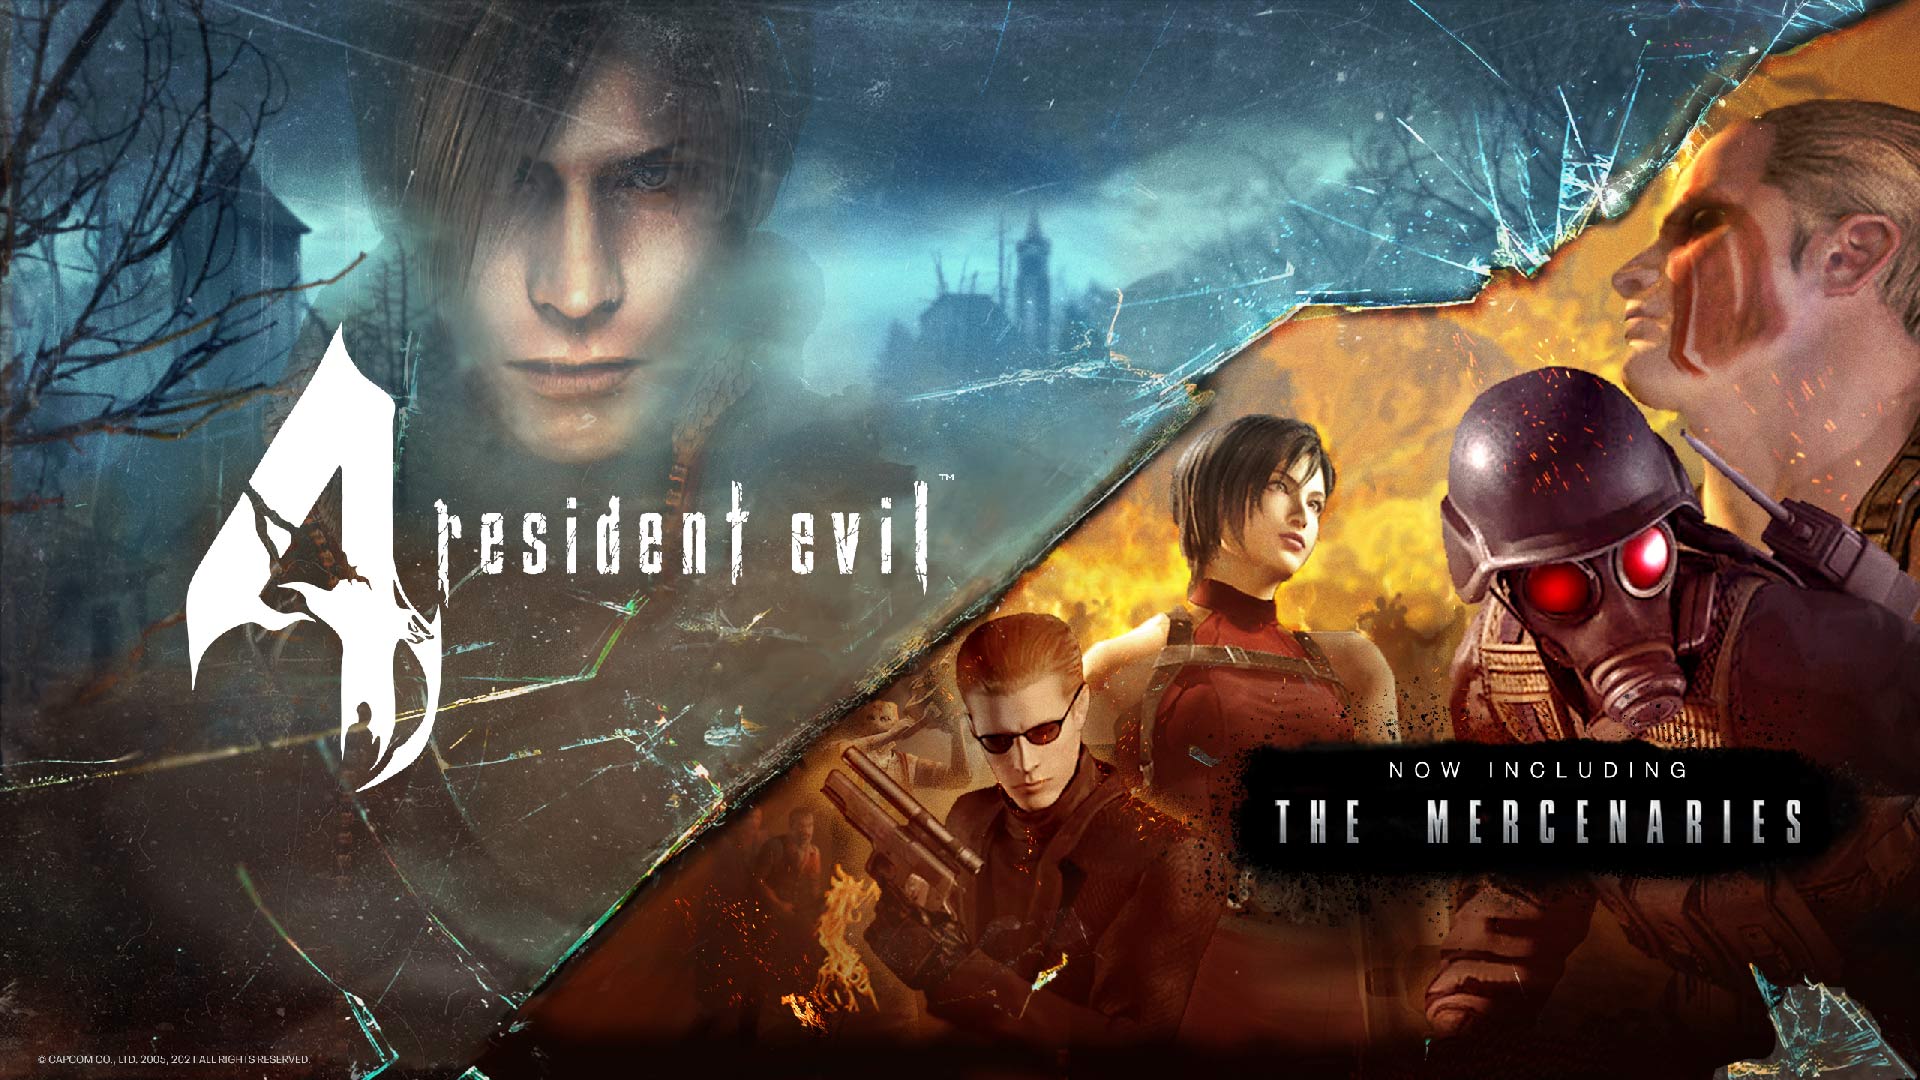 Resident Evil 4 'The Mercenaries' mode release date revealed